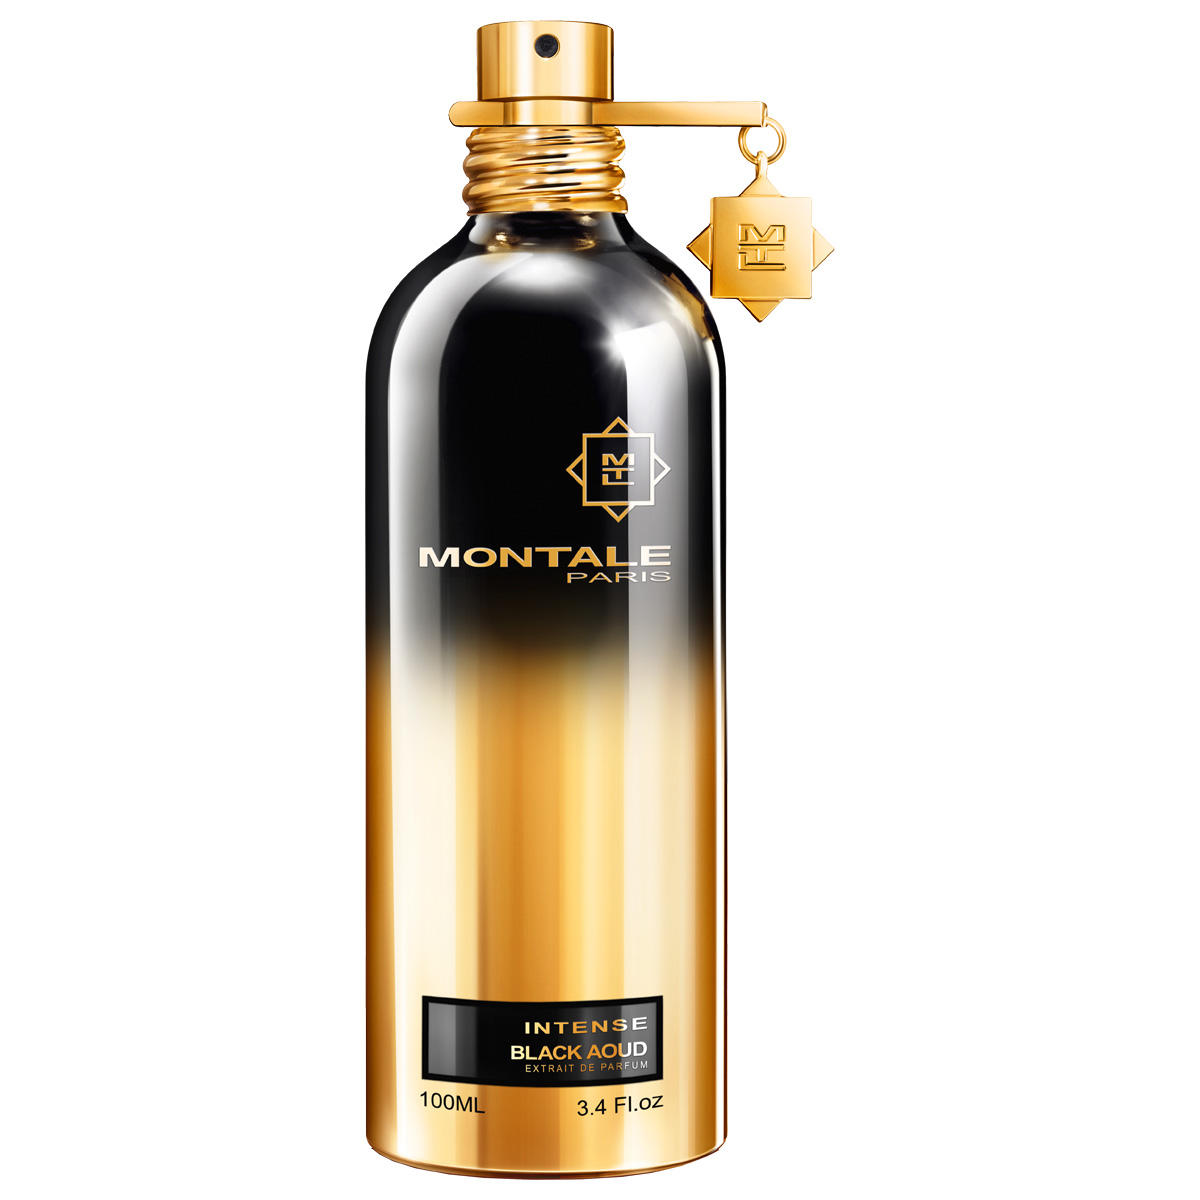 Montale Intense Black Aoud Eau de Parfum 100 ml - 1